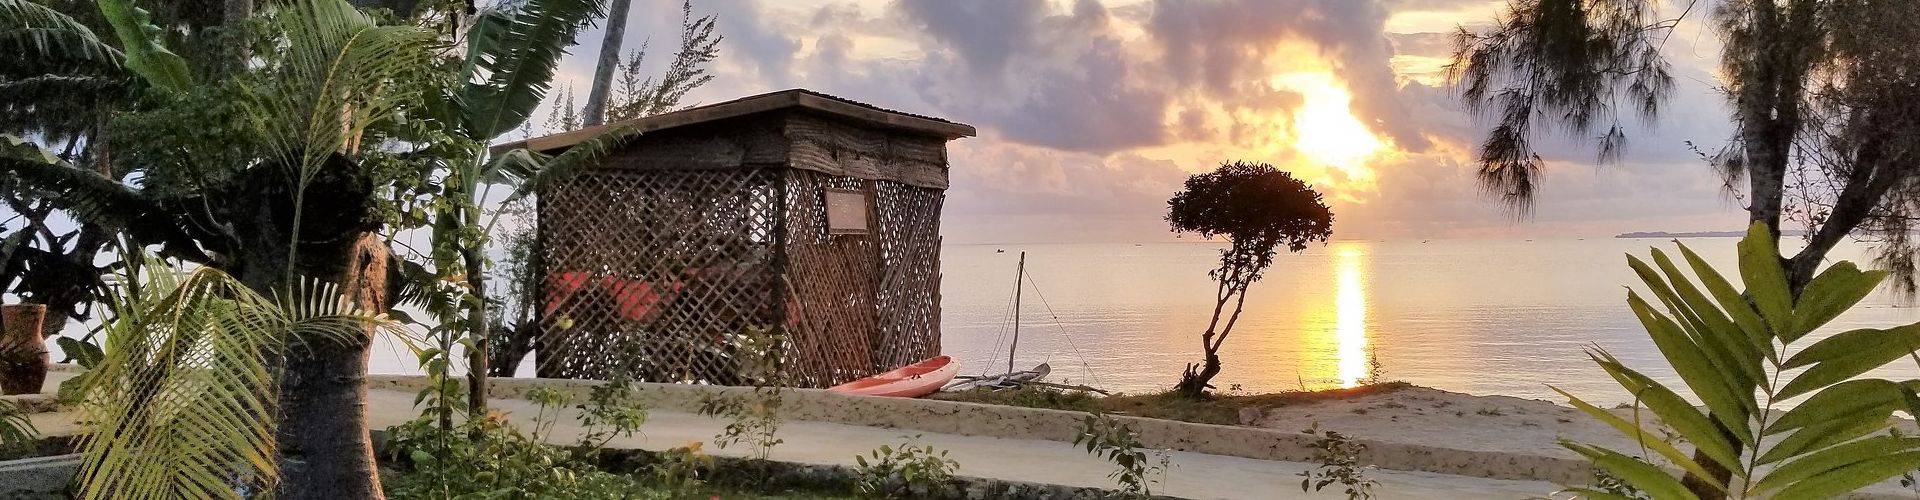 Profitez de quelques jours de tranquillité sur l'archipel magique de Zanzibar